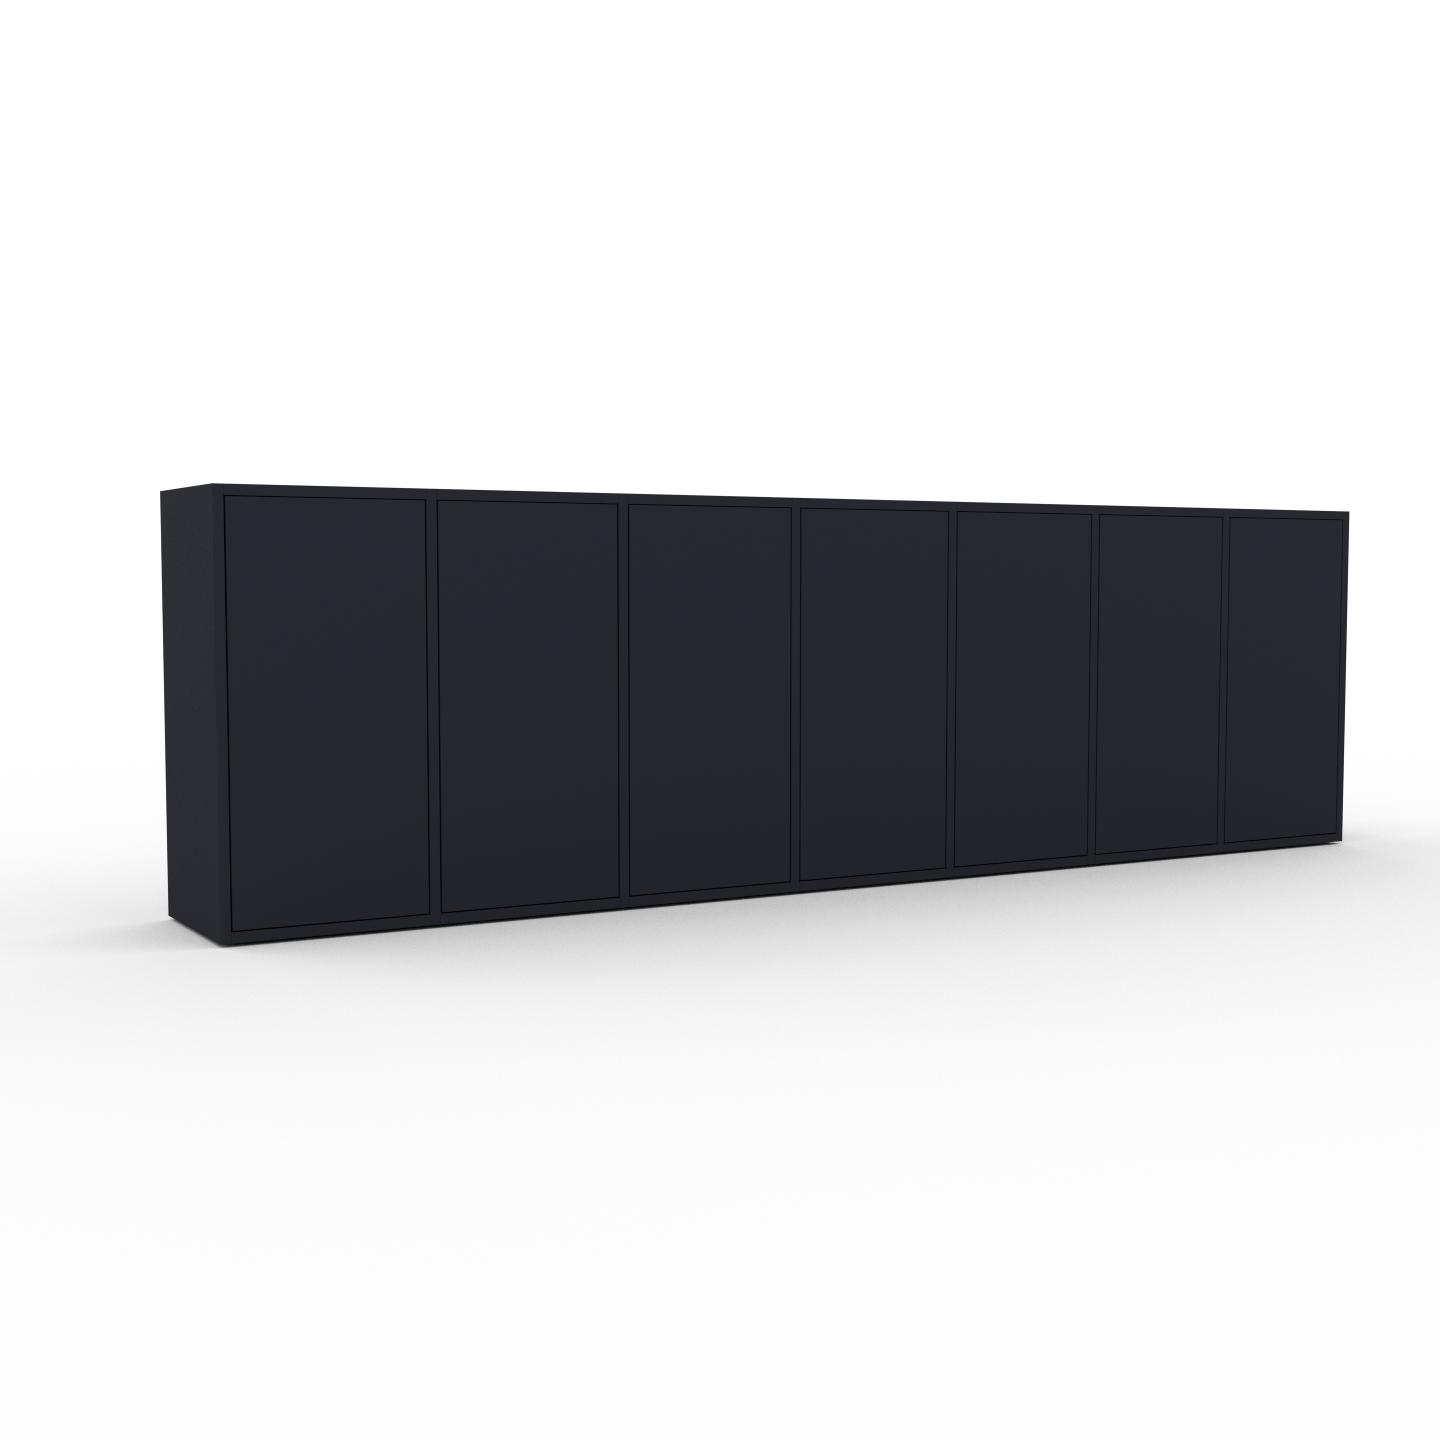 MYCS Bücherregal Anthrazit - Modernes Regal für Bücher: Türen in Anthrazit - 272 x 80 x 35 cm, Individuell konfigurierbar